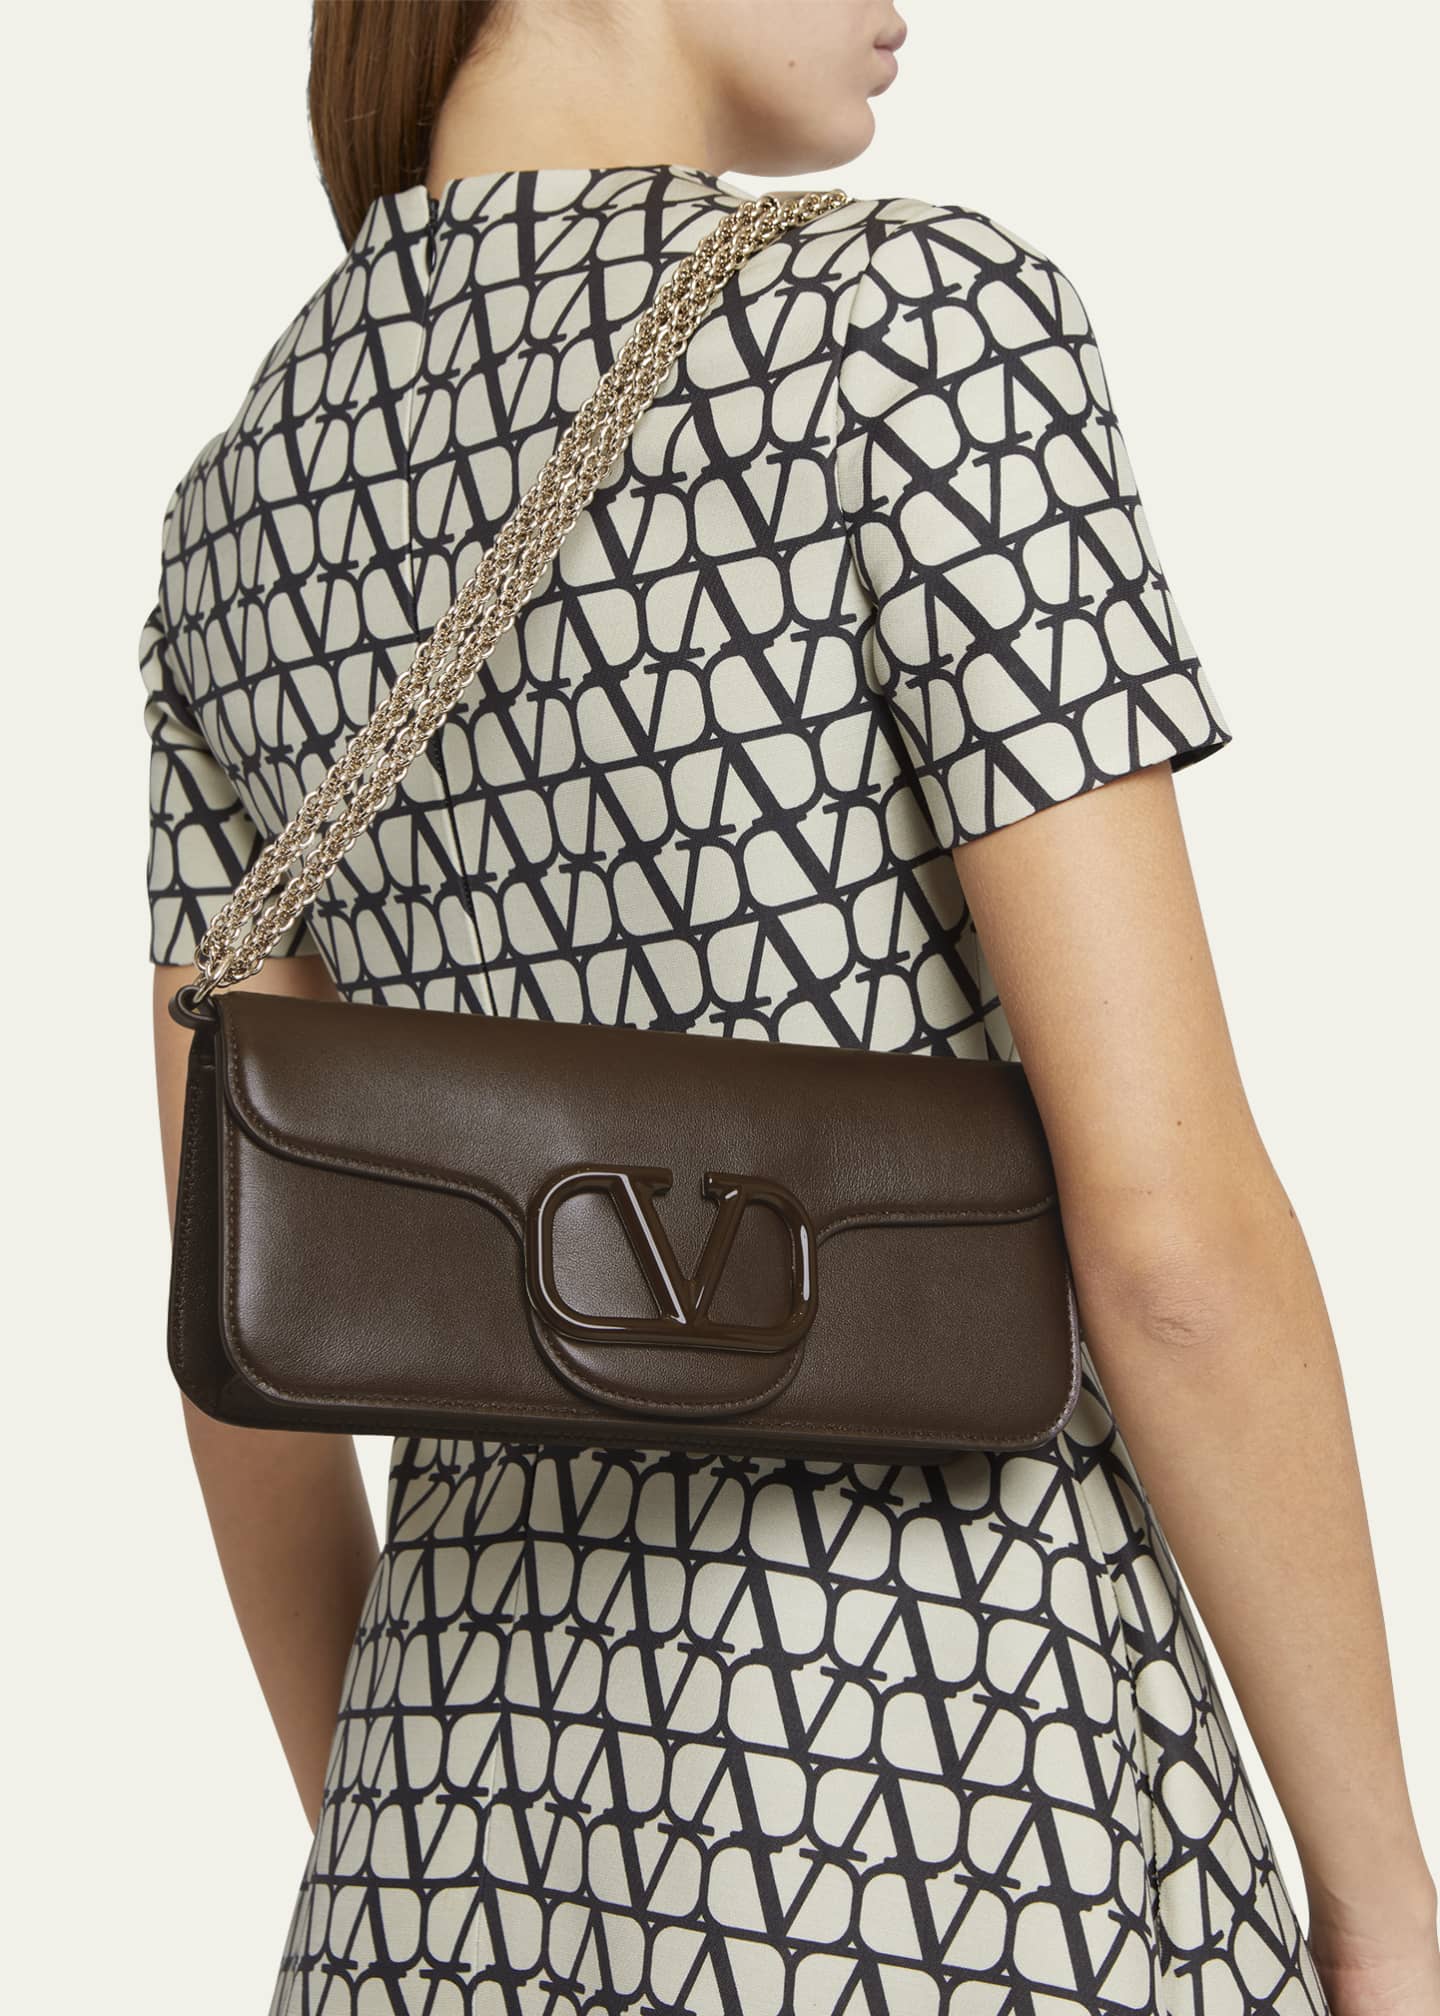 VALENTINO GARAVANI VLOGO leather shoulder bag in 2023  Valentino bags,  Leather shoulder bag, Valentino purse